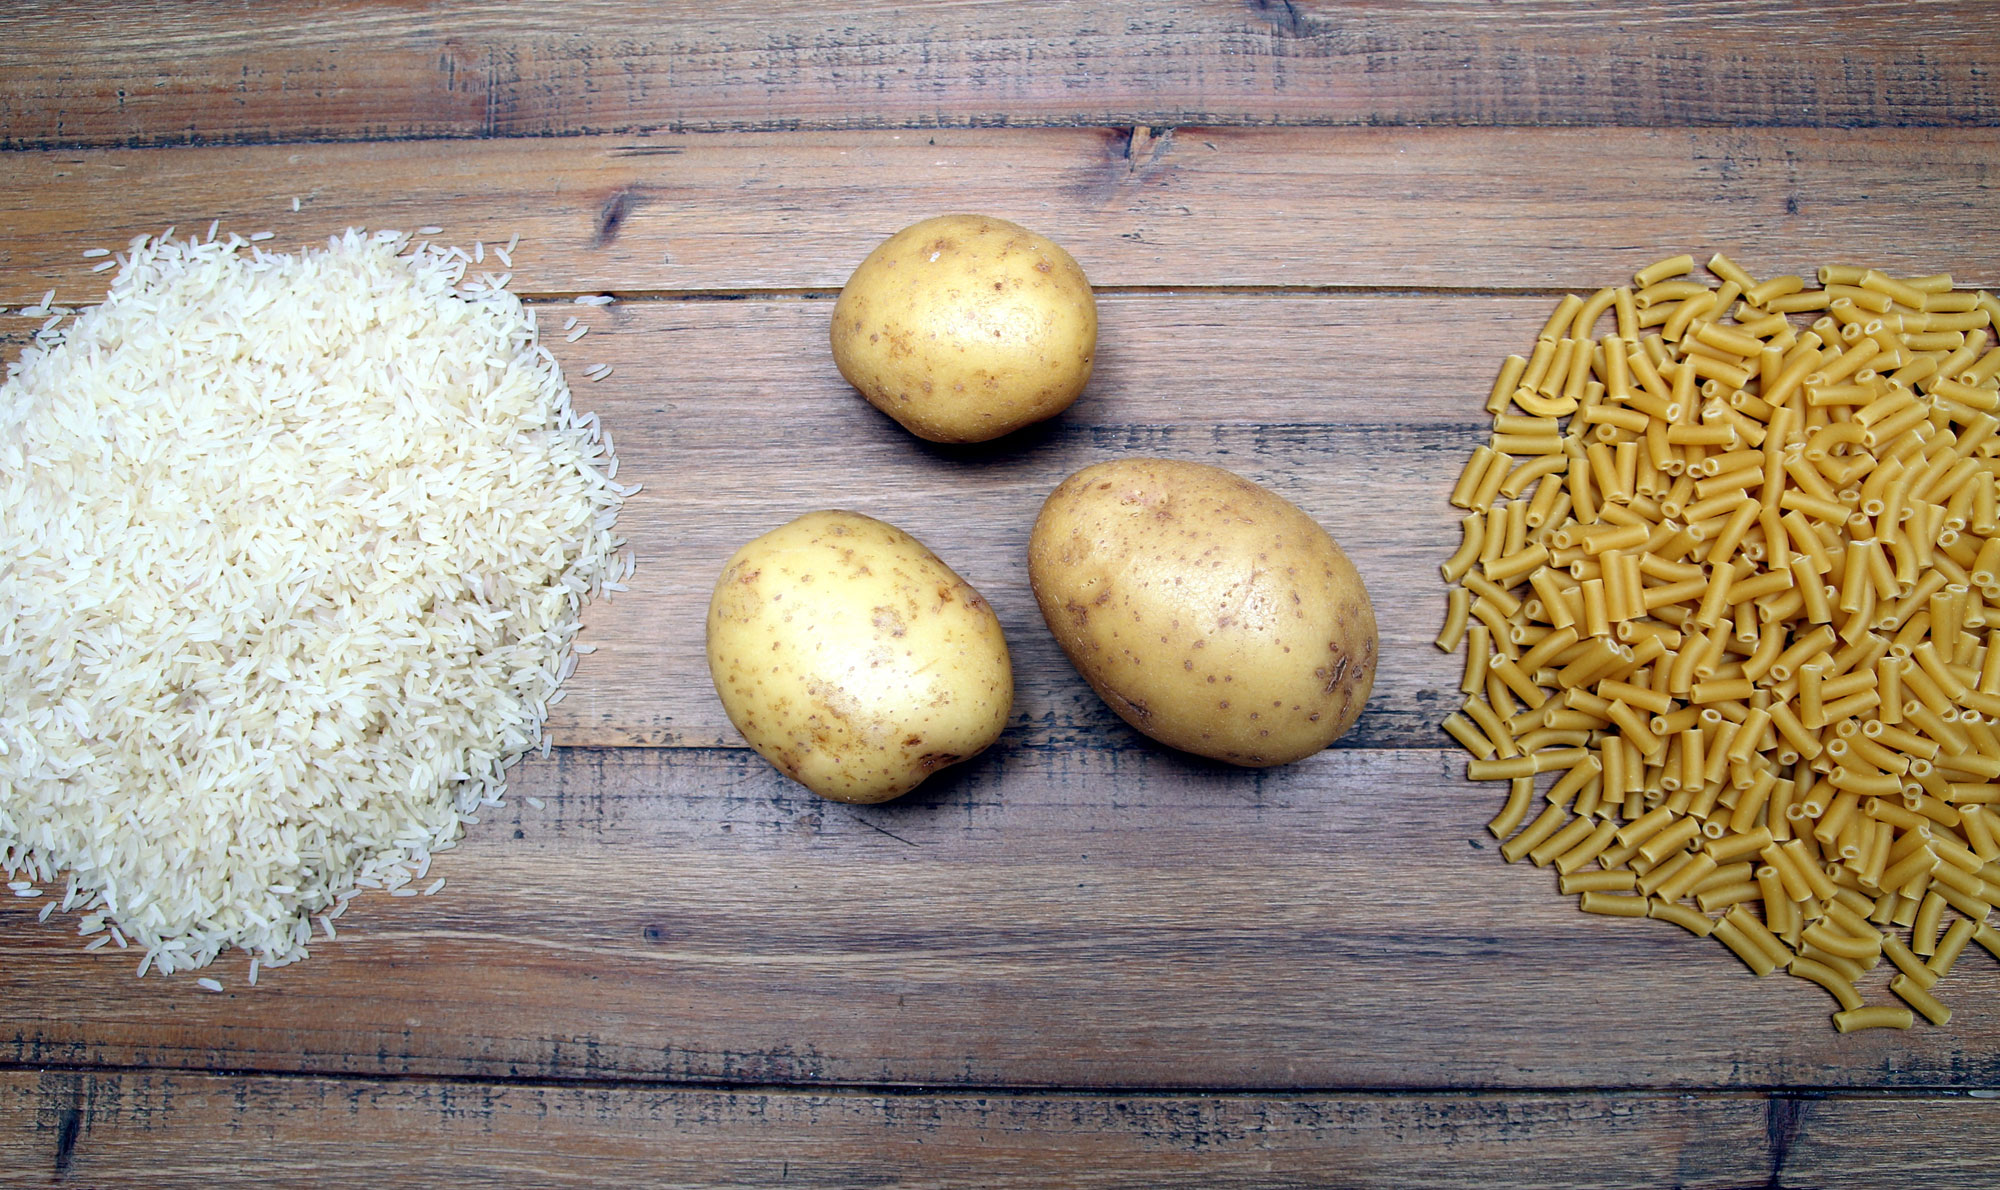 Rice potato. Картошка рис макароны. Рис и картофель. Рис с картошкой. Картошка рис гречка макароны.